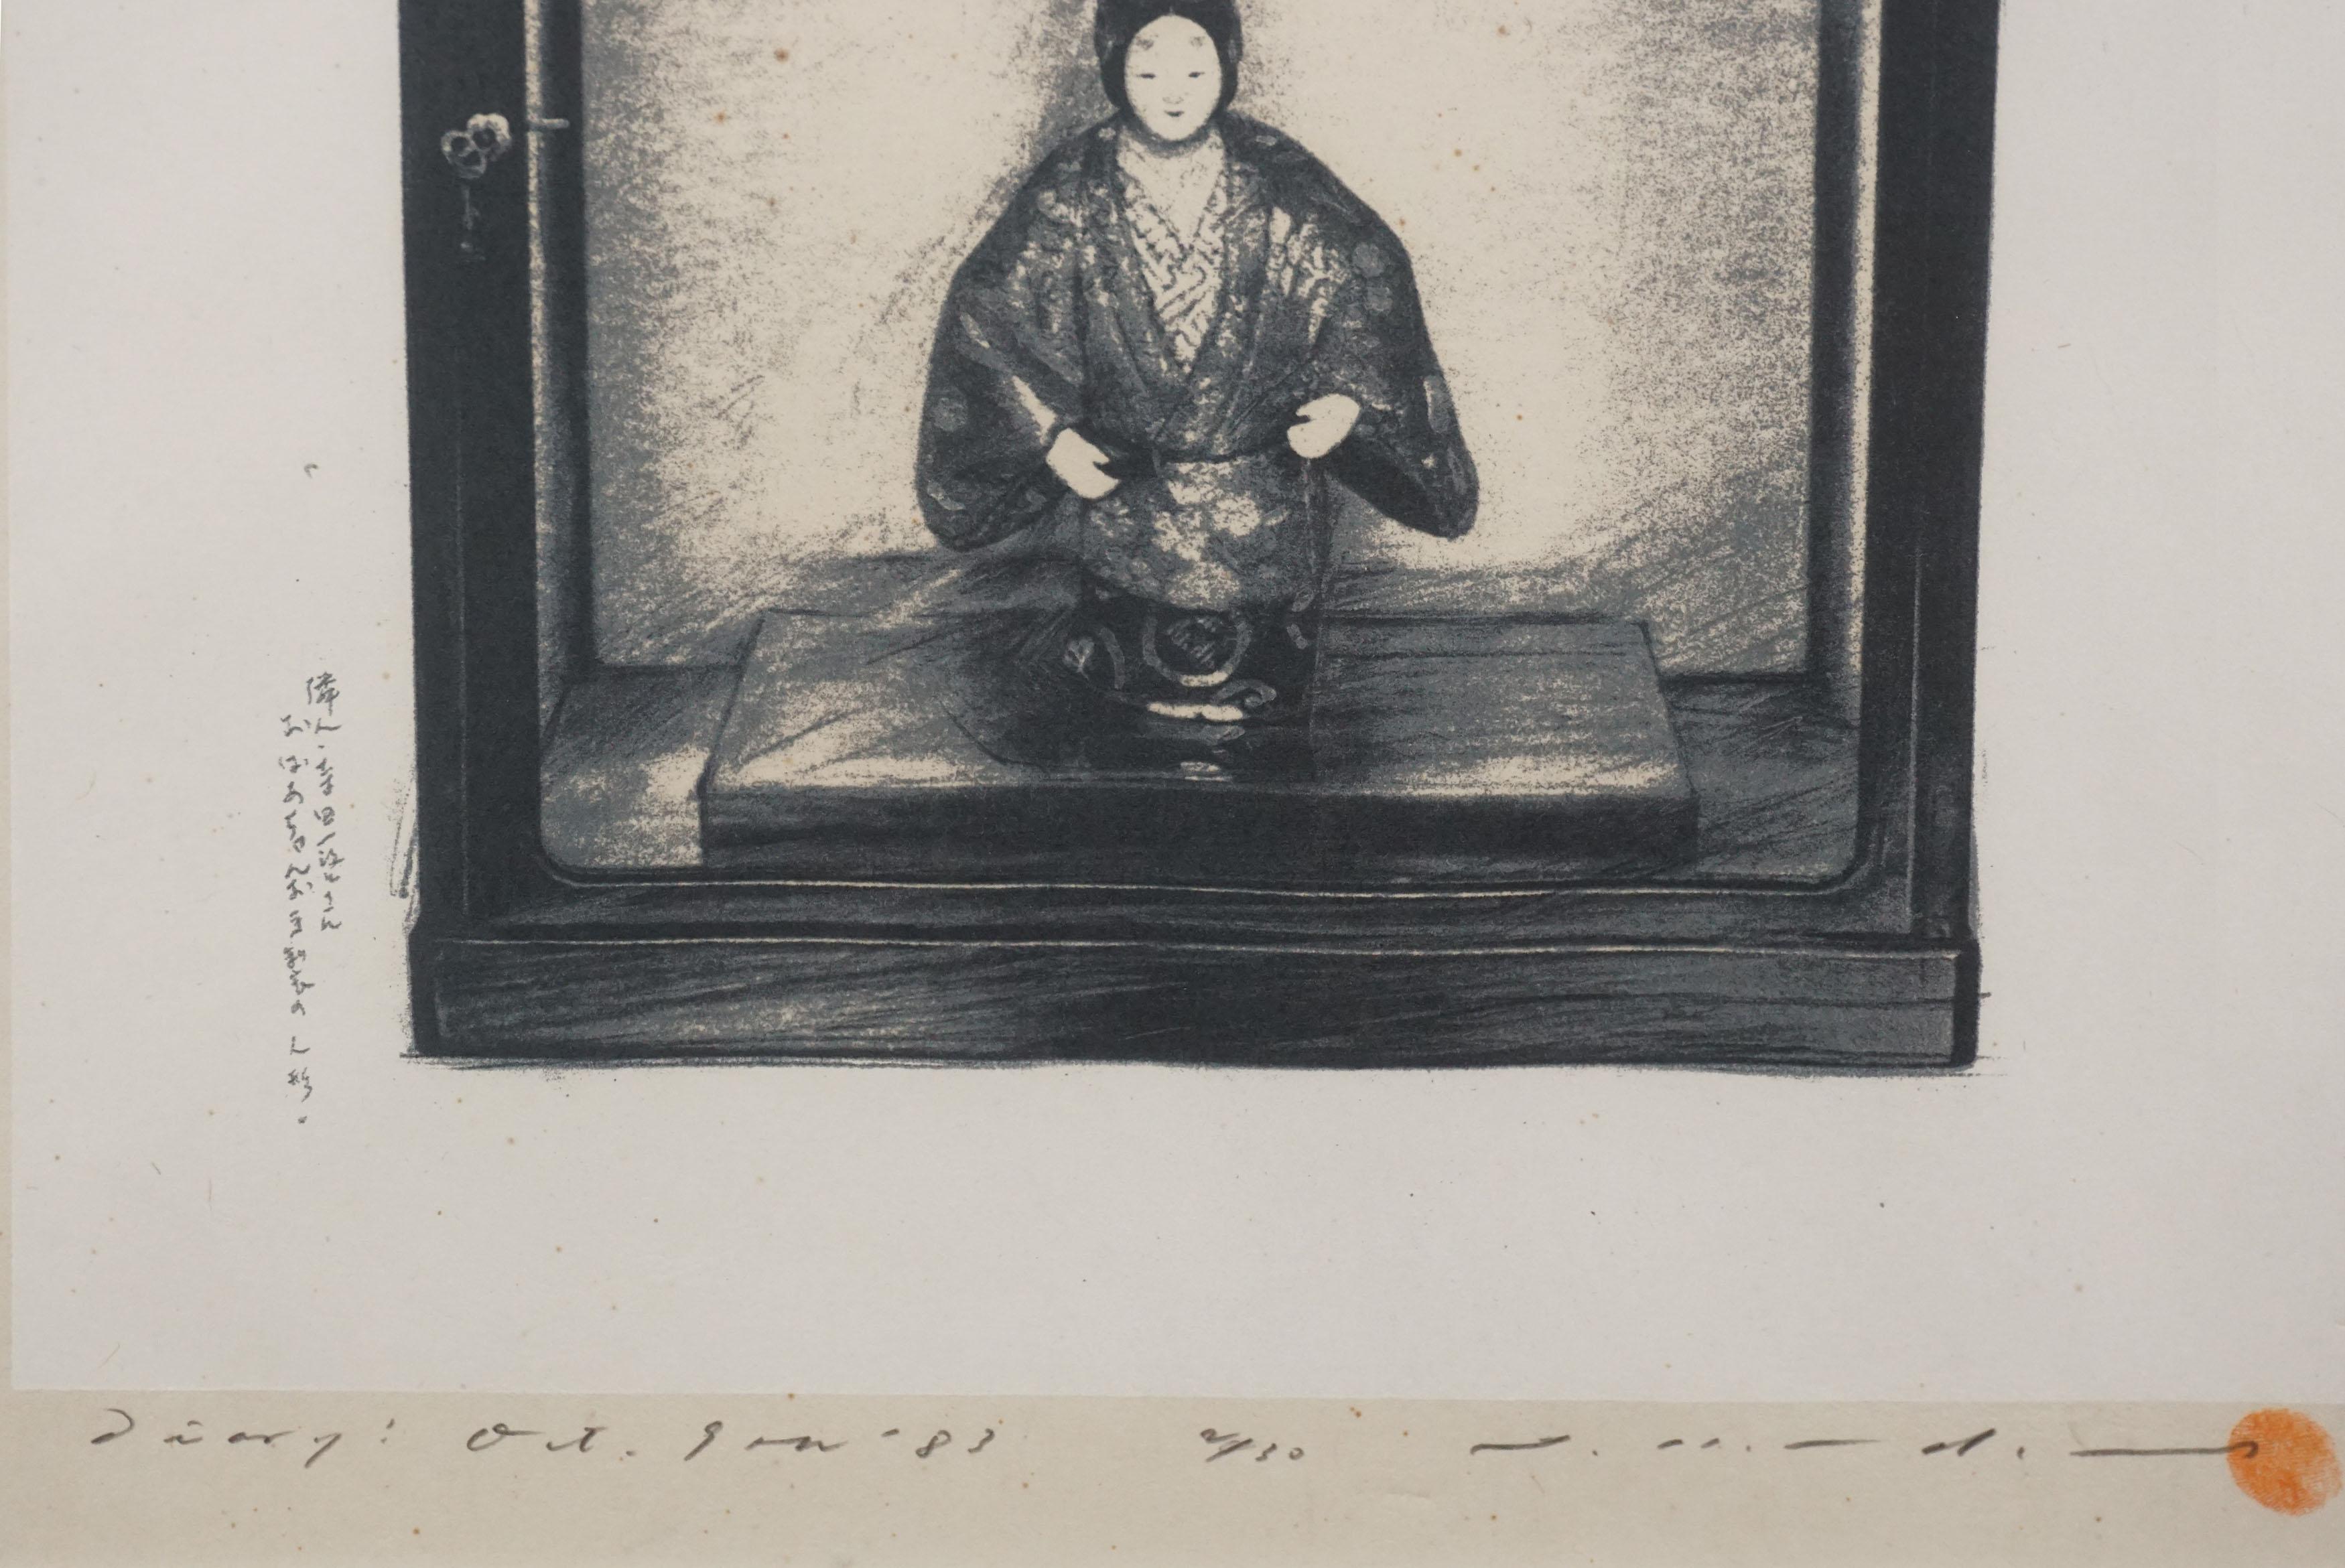 Wunderschöner Siebdruck einer japanischen Tagebuchschreiberpuppe im Glaskasten. Unleserlich signiert in der linken Ecke, datiert (8. Oktober 1983) und nummeriert (2/30). Präsentiert in einem Holzrahmen. Bildgröße: 20 